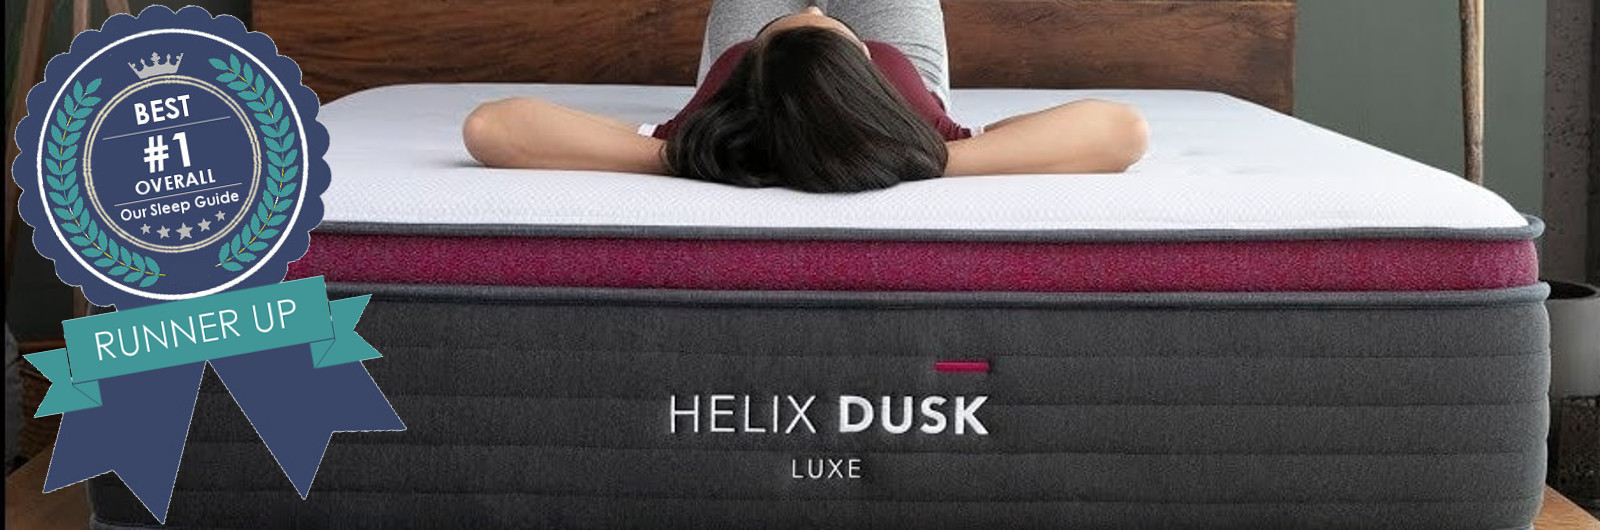 best mattress 2021 helix luxe